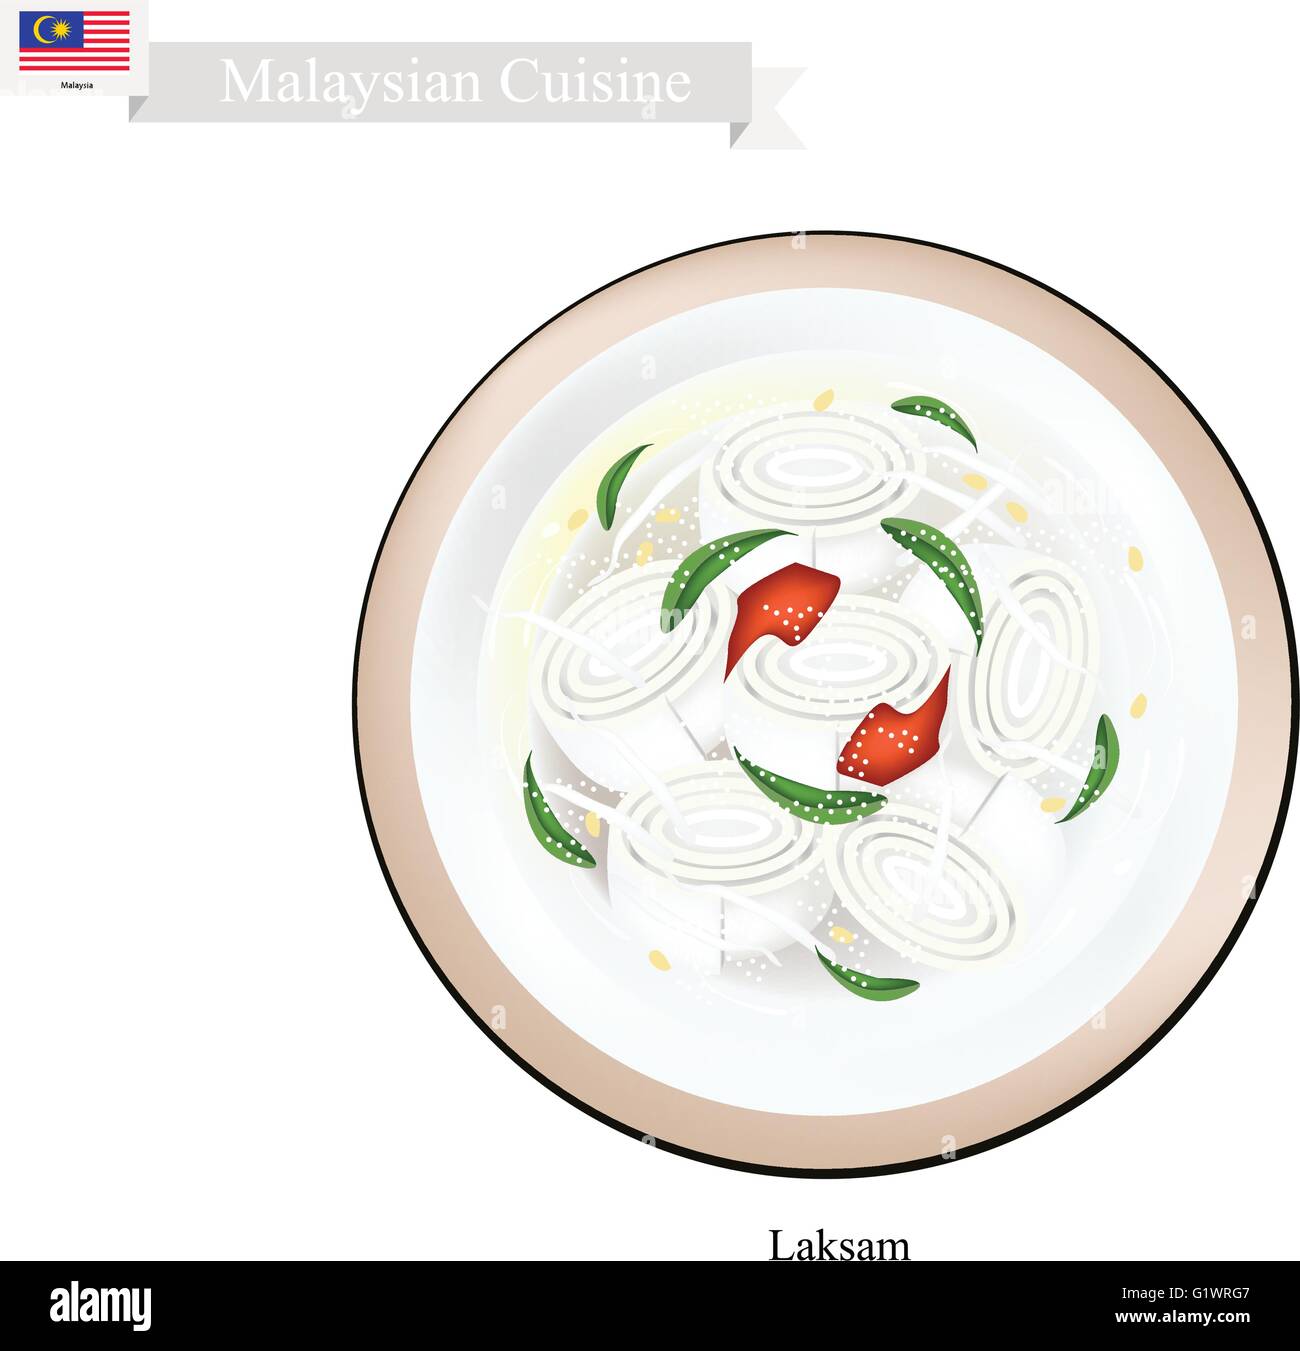 La cuisine malaisienne, ou Laksa nouilles de riz larges traditionnel servi dans une sauce de noix de coco crémeuse et pilonnèrent les poissons. L'un des plus Popula Illustration de Vecteur